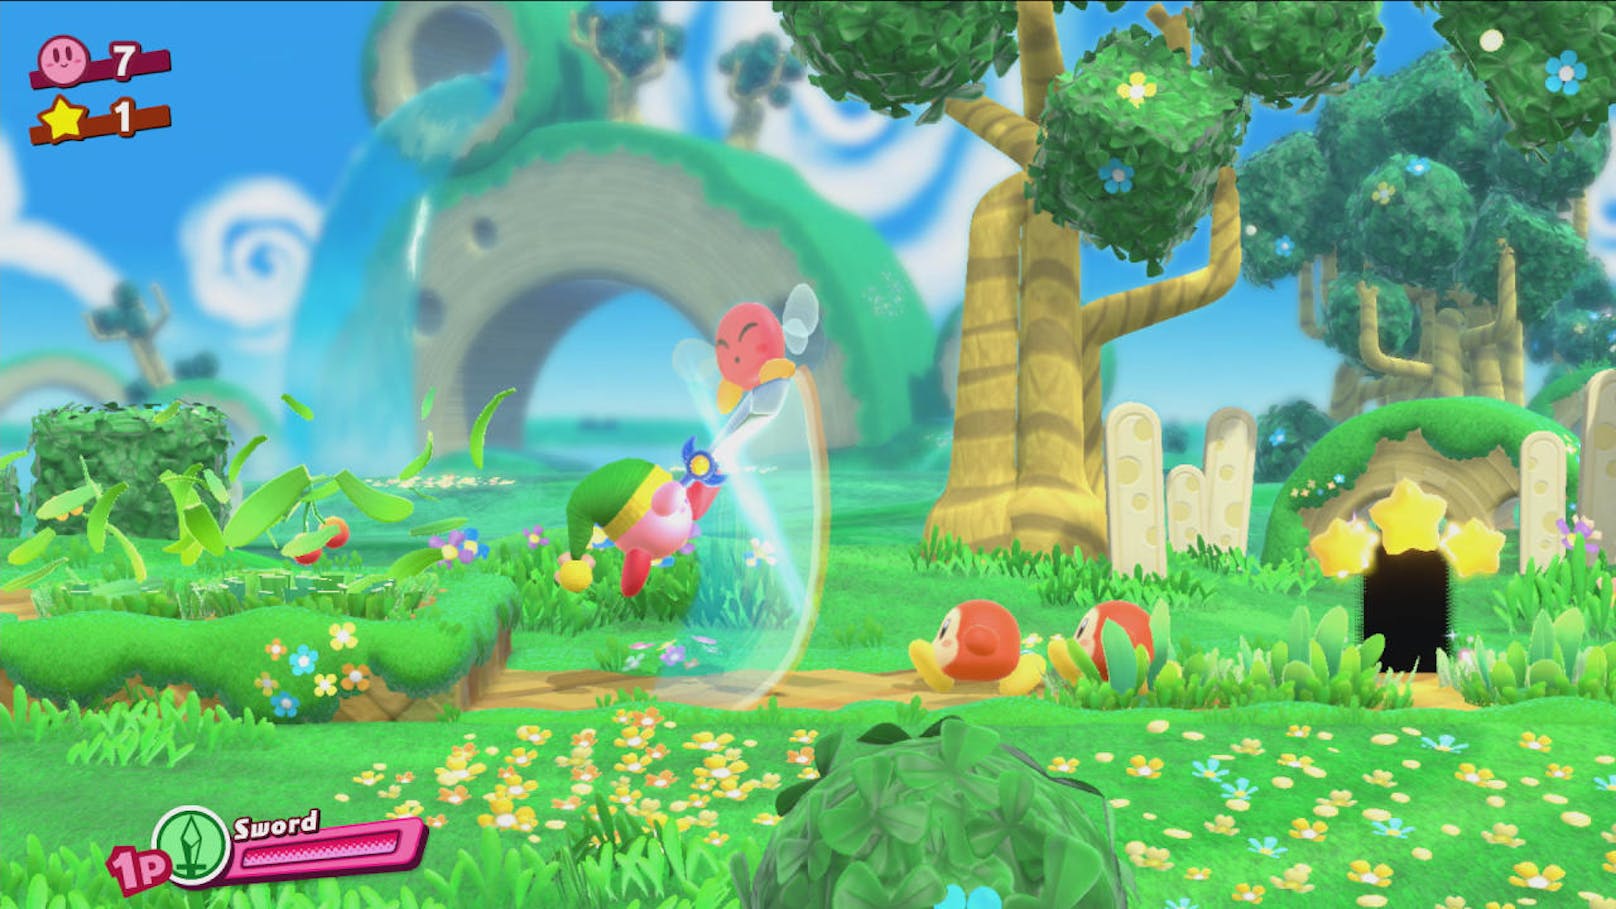 Es bleibt alles, wie man es in einem Kirby-Spiel kennt: laufen und springen in typischer Jump'n'Run-Manier von links nach rechts und manchmal nach oben oder unten am Bildschirm. Was hier umso liebenswerter geschieht.